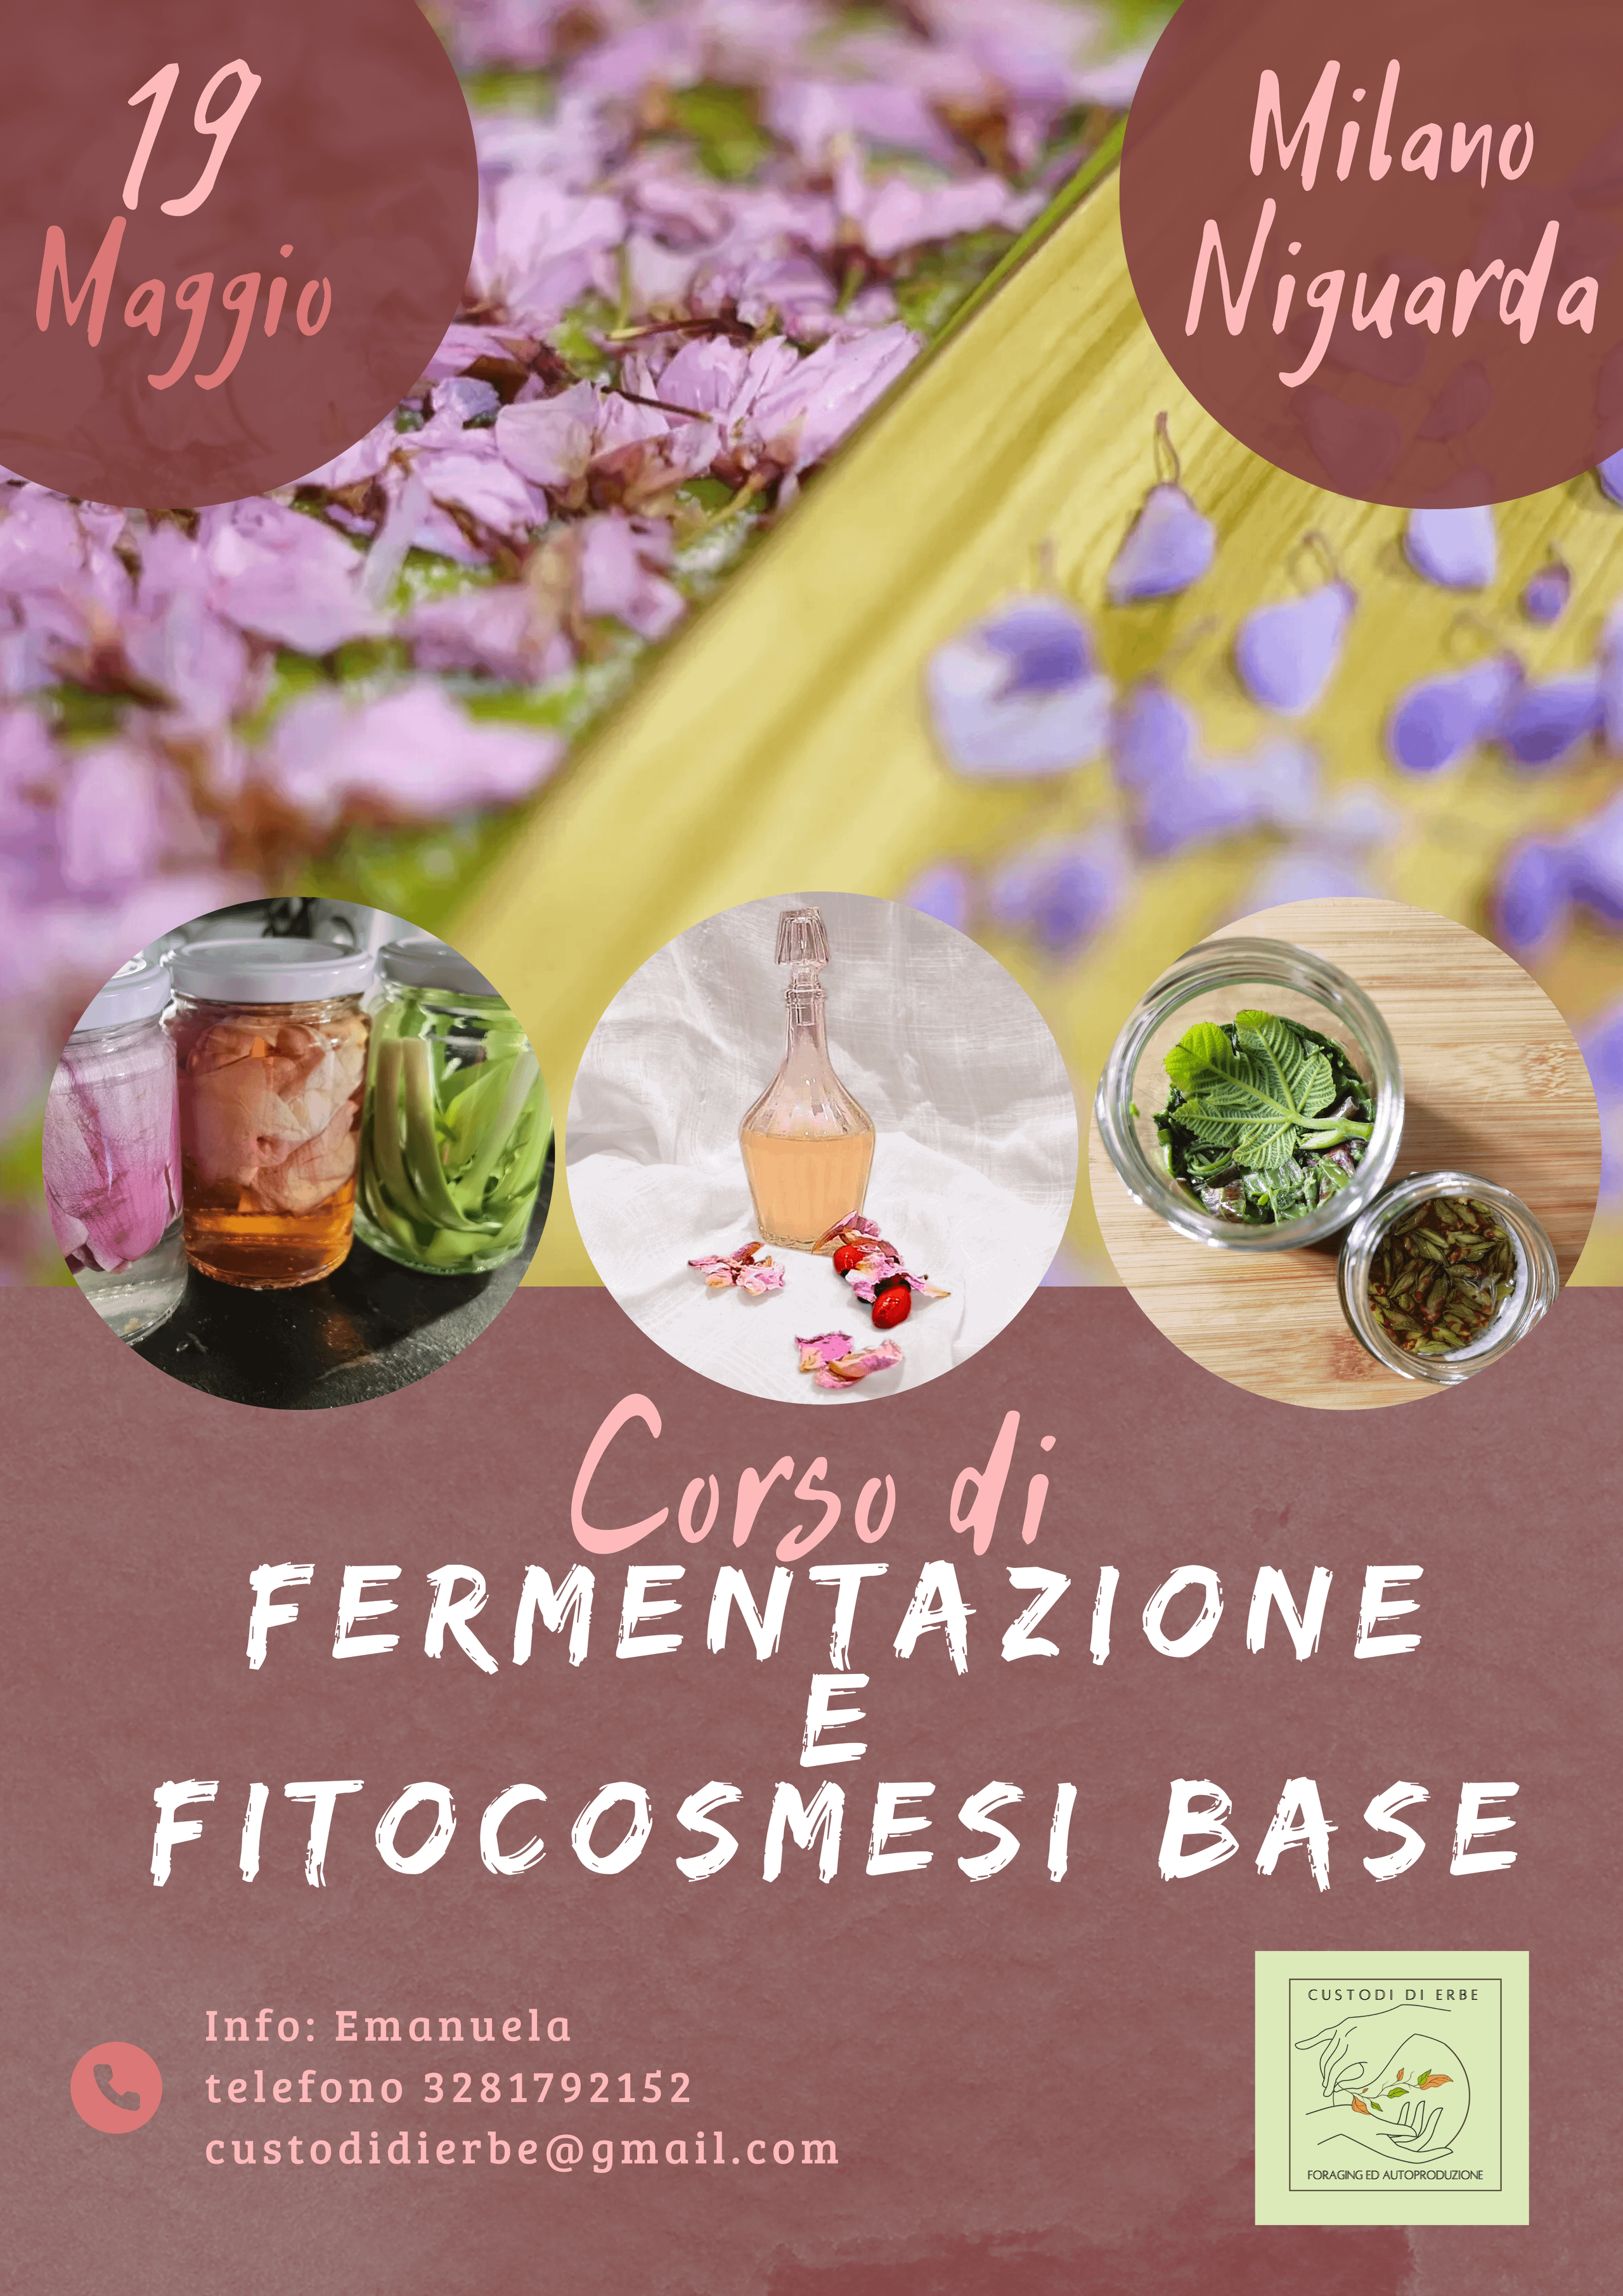 Fermentazione e fitocosmesi base - Milano 19 maggio